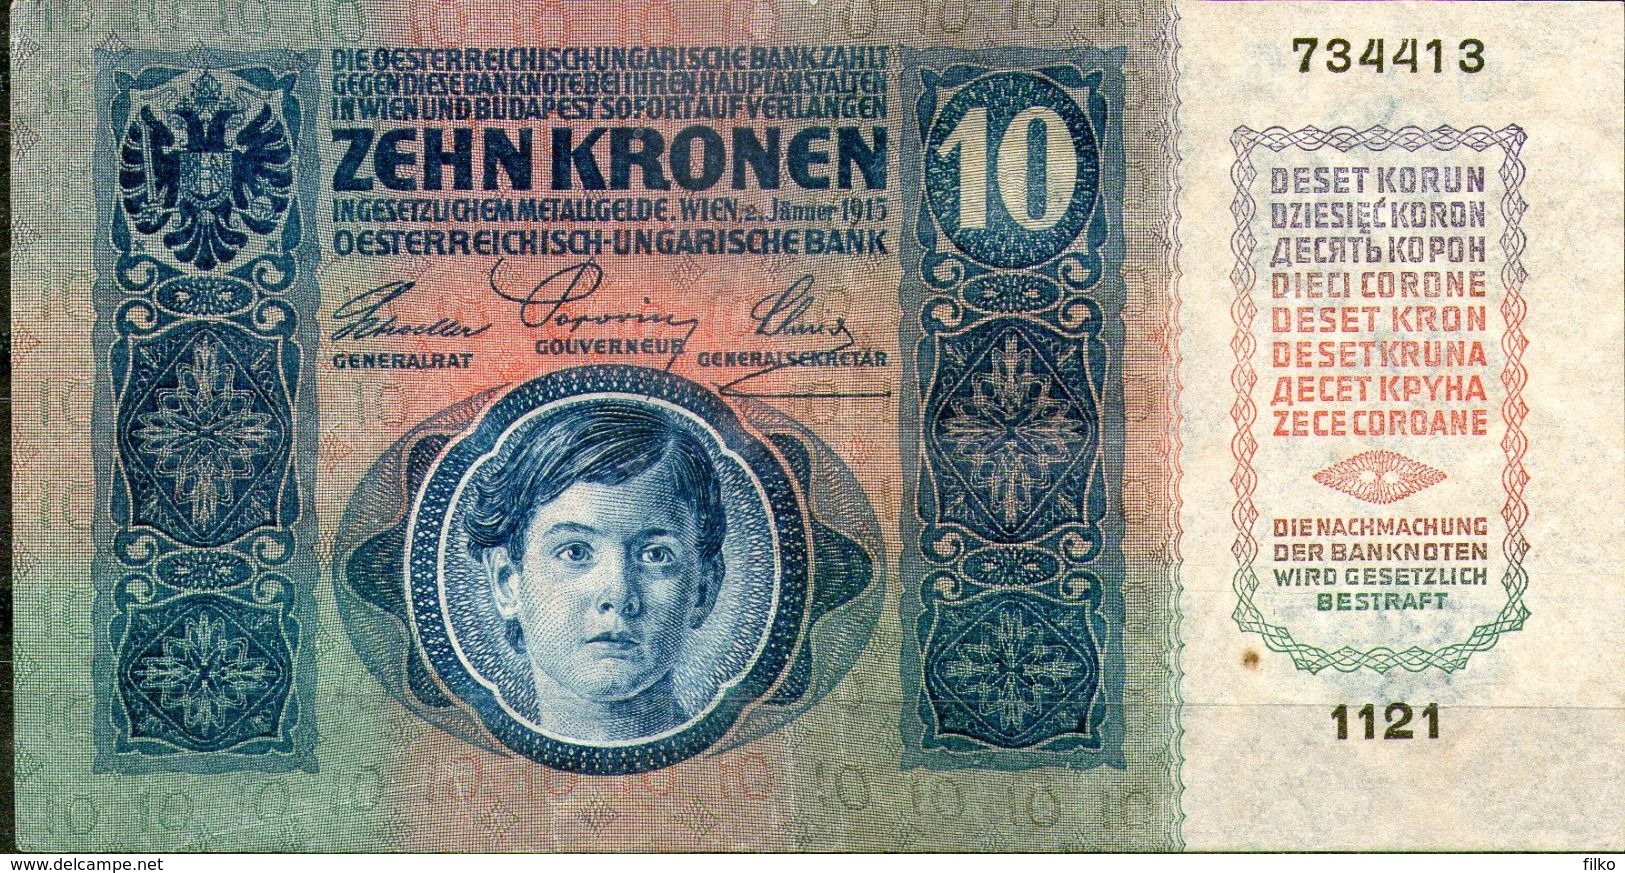 Austria,1914-1915 Issue,P.19,10 Kronen,as Scan - Oesterreich